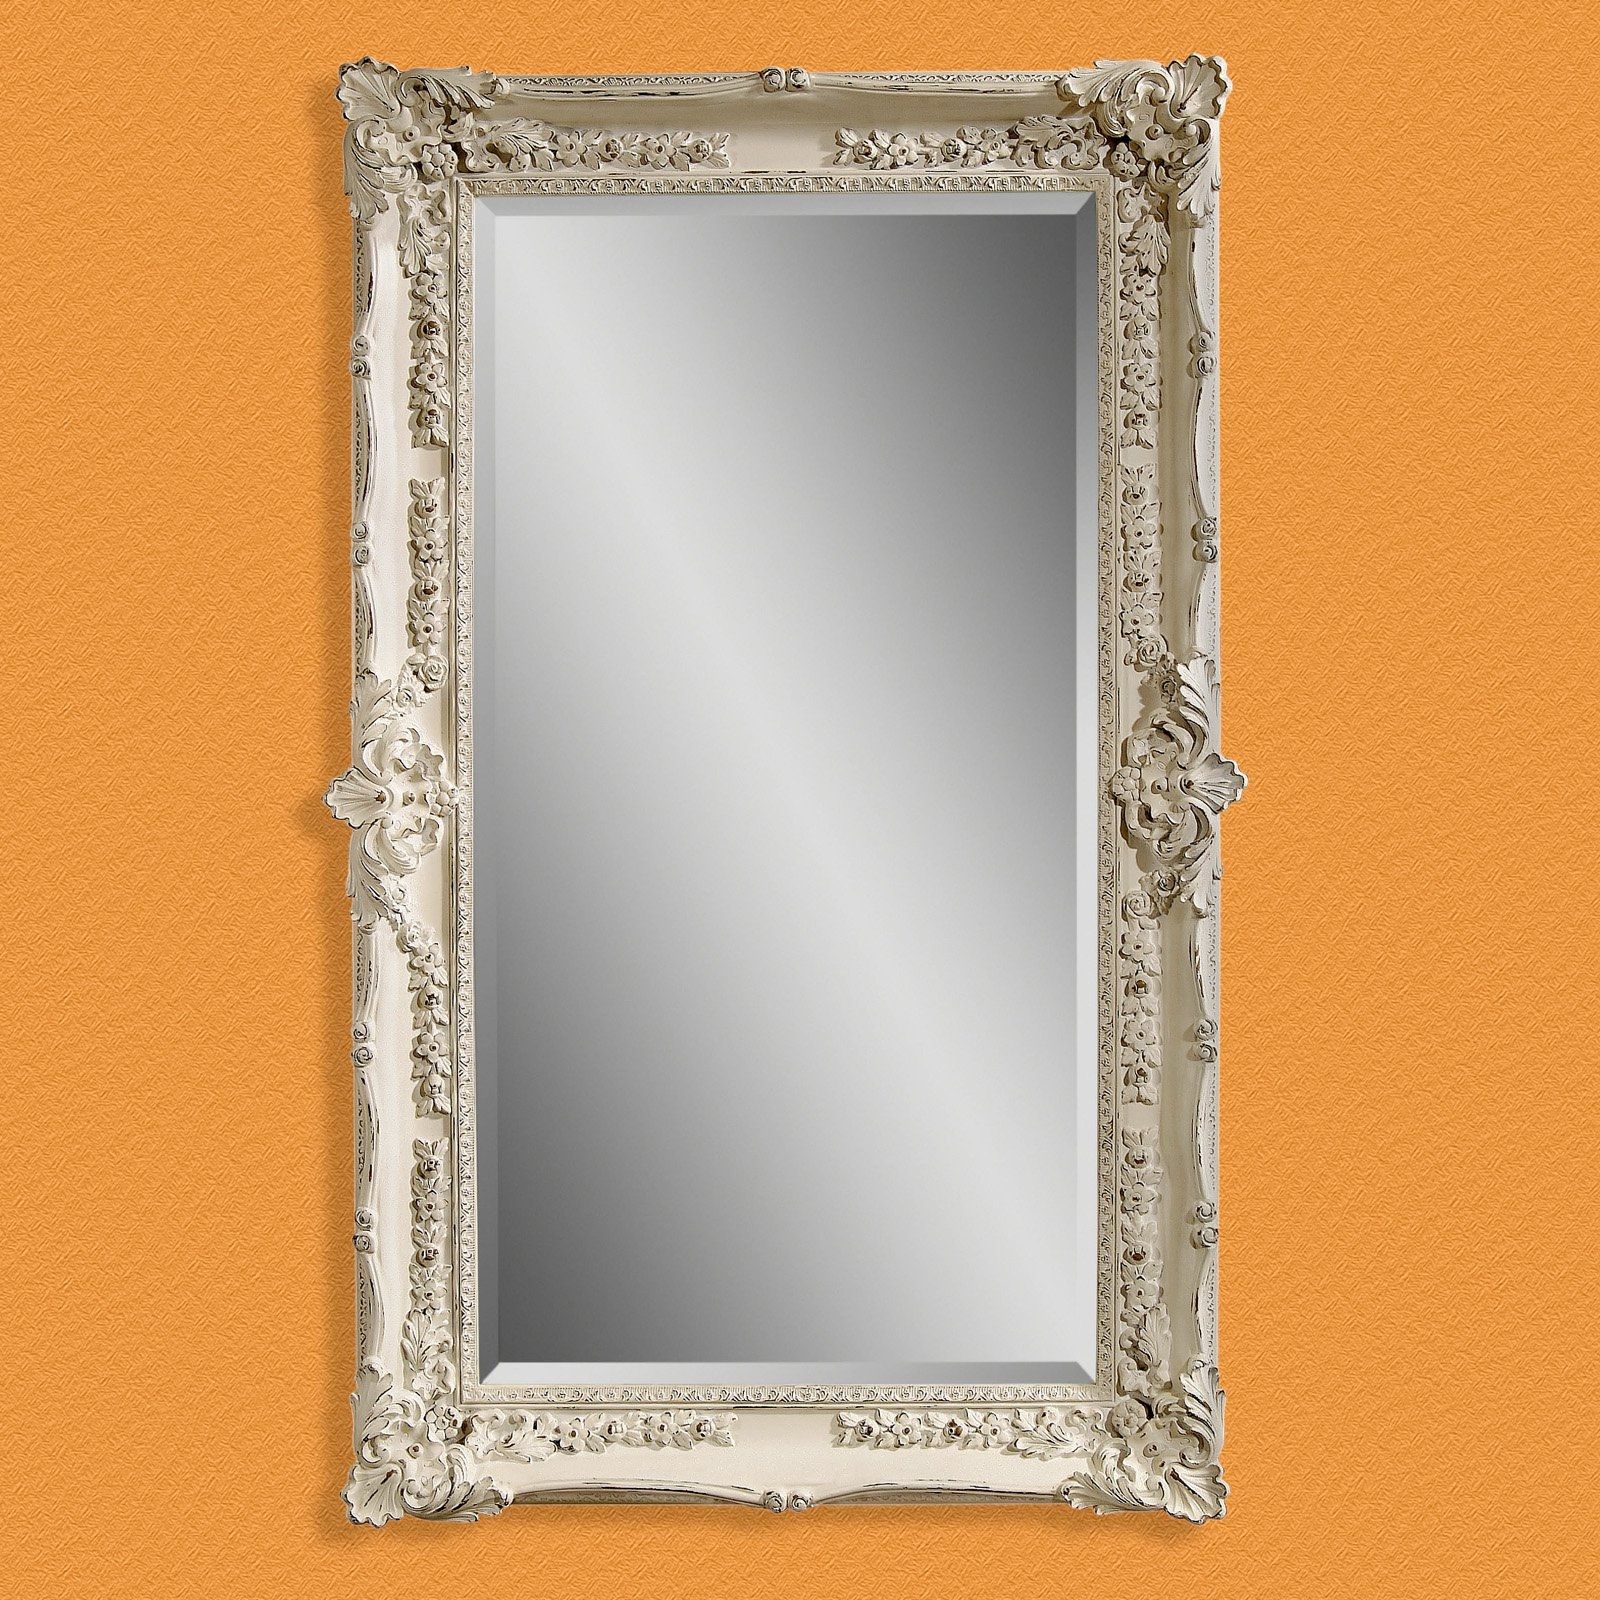 Pulaski Rhianna Floor Mirror Mirrors At Hayneedle With Regard To White Antique Mirror (Photo 12 of 15)